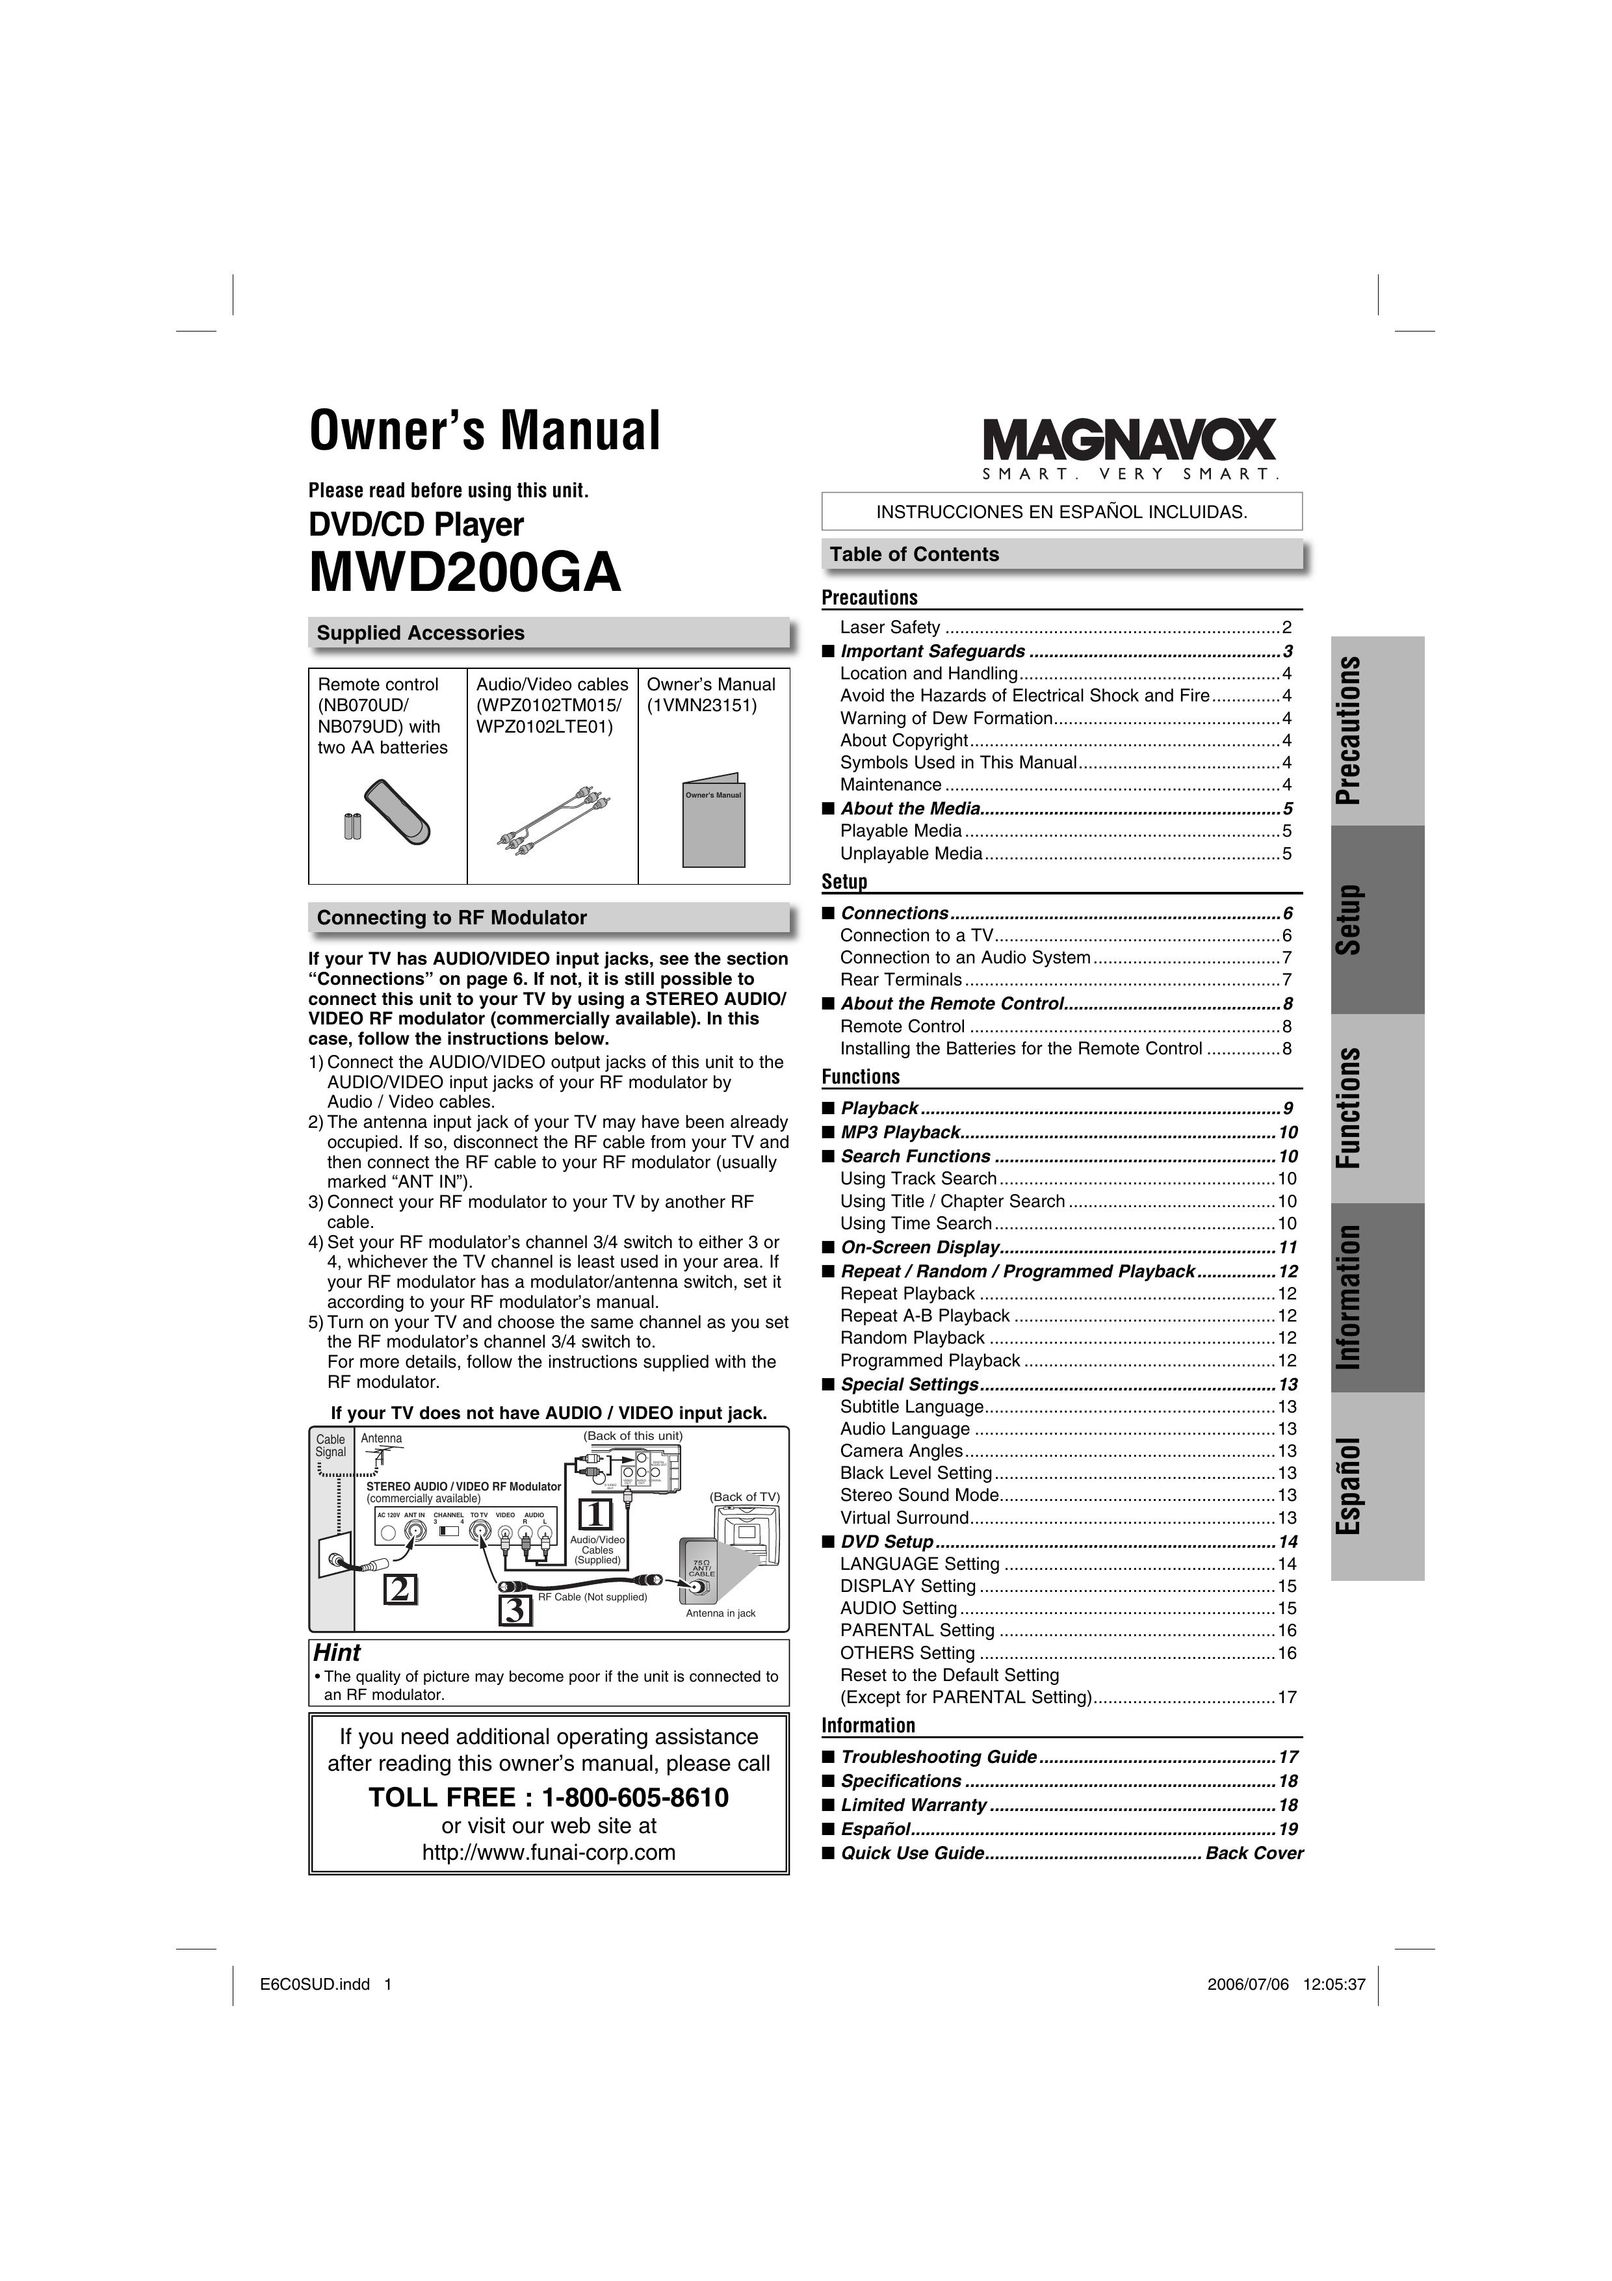 Magnavox MWD200GA DVD Player User Manual